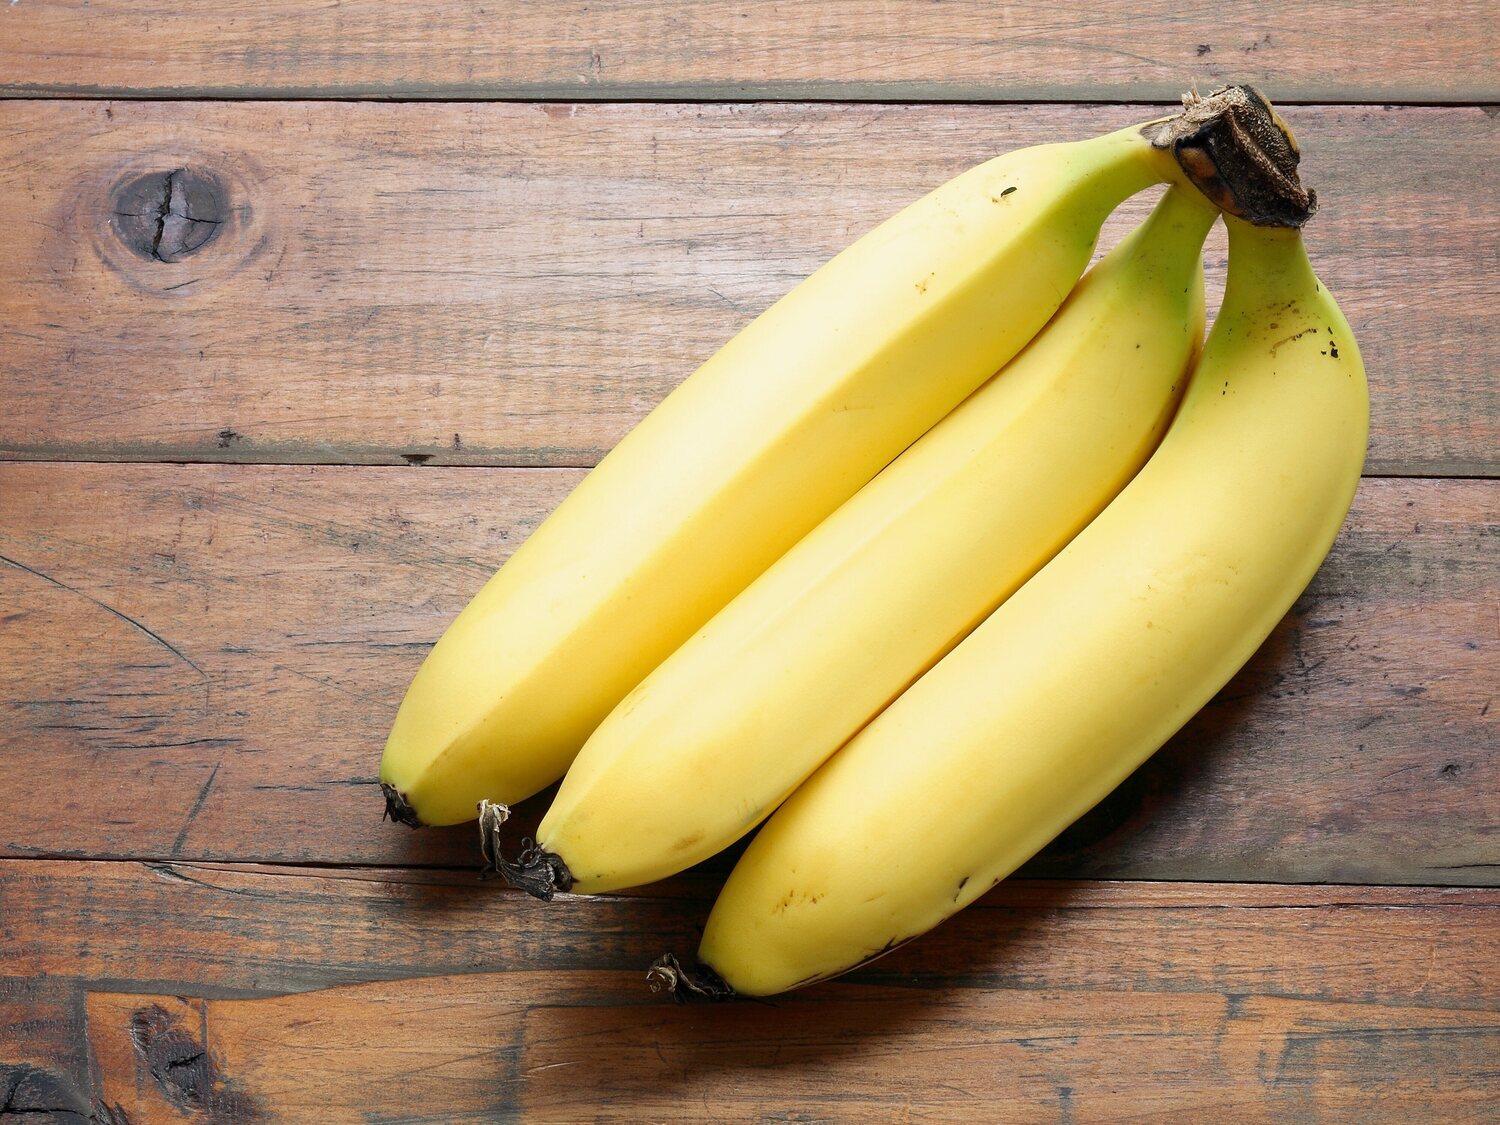 Si encuentras estas manchas blancas en tu plátano, no te lo comas: podrían ser arañas